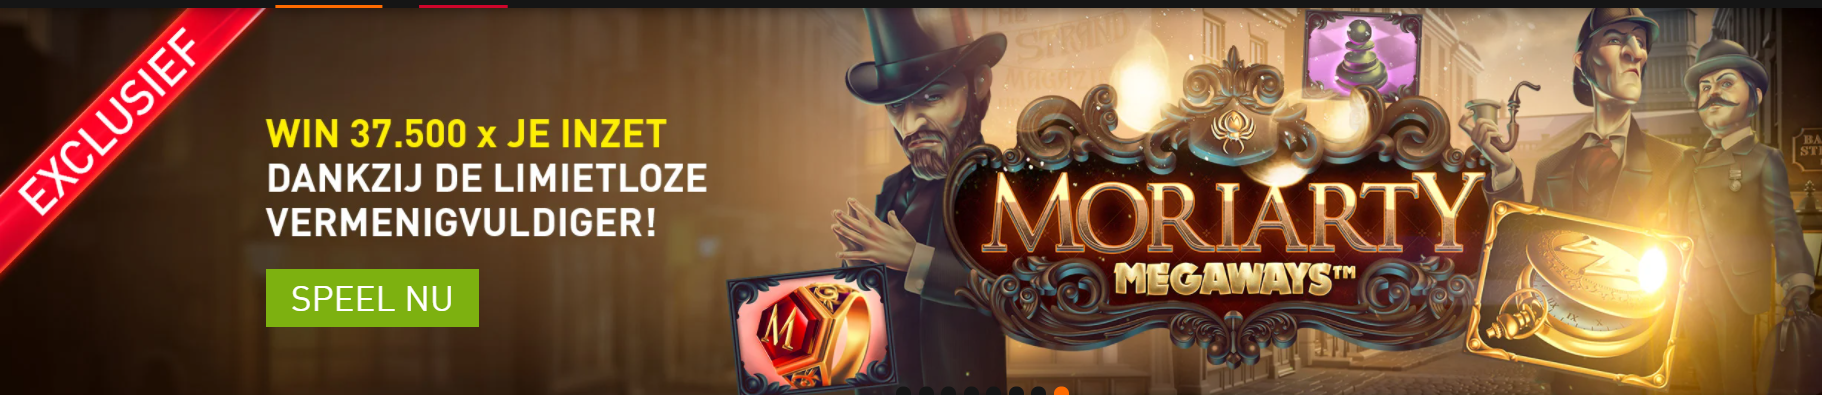 Moriarty Megaways online videoslots gokkasten Unibet Casino 777 Napoleon Circus 2021